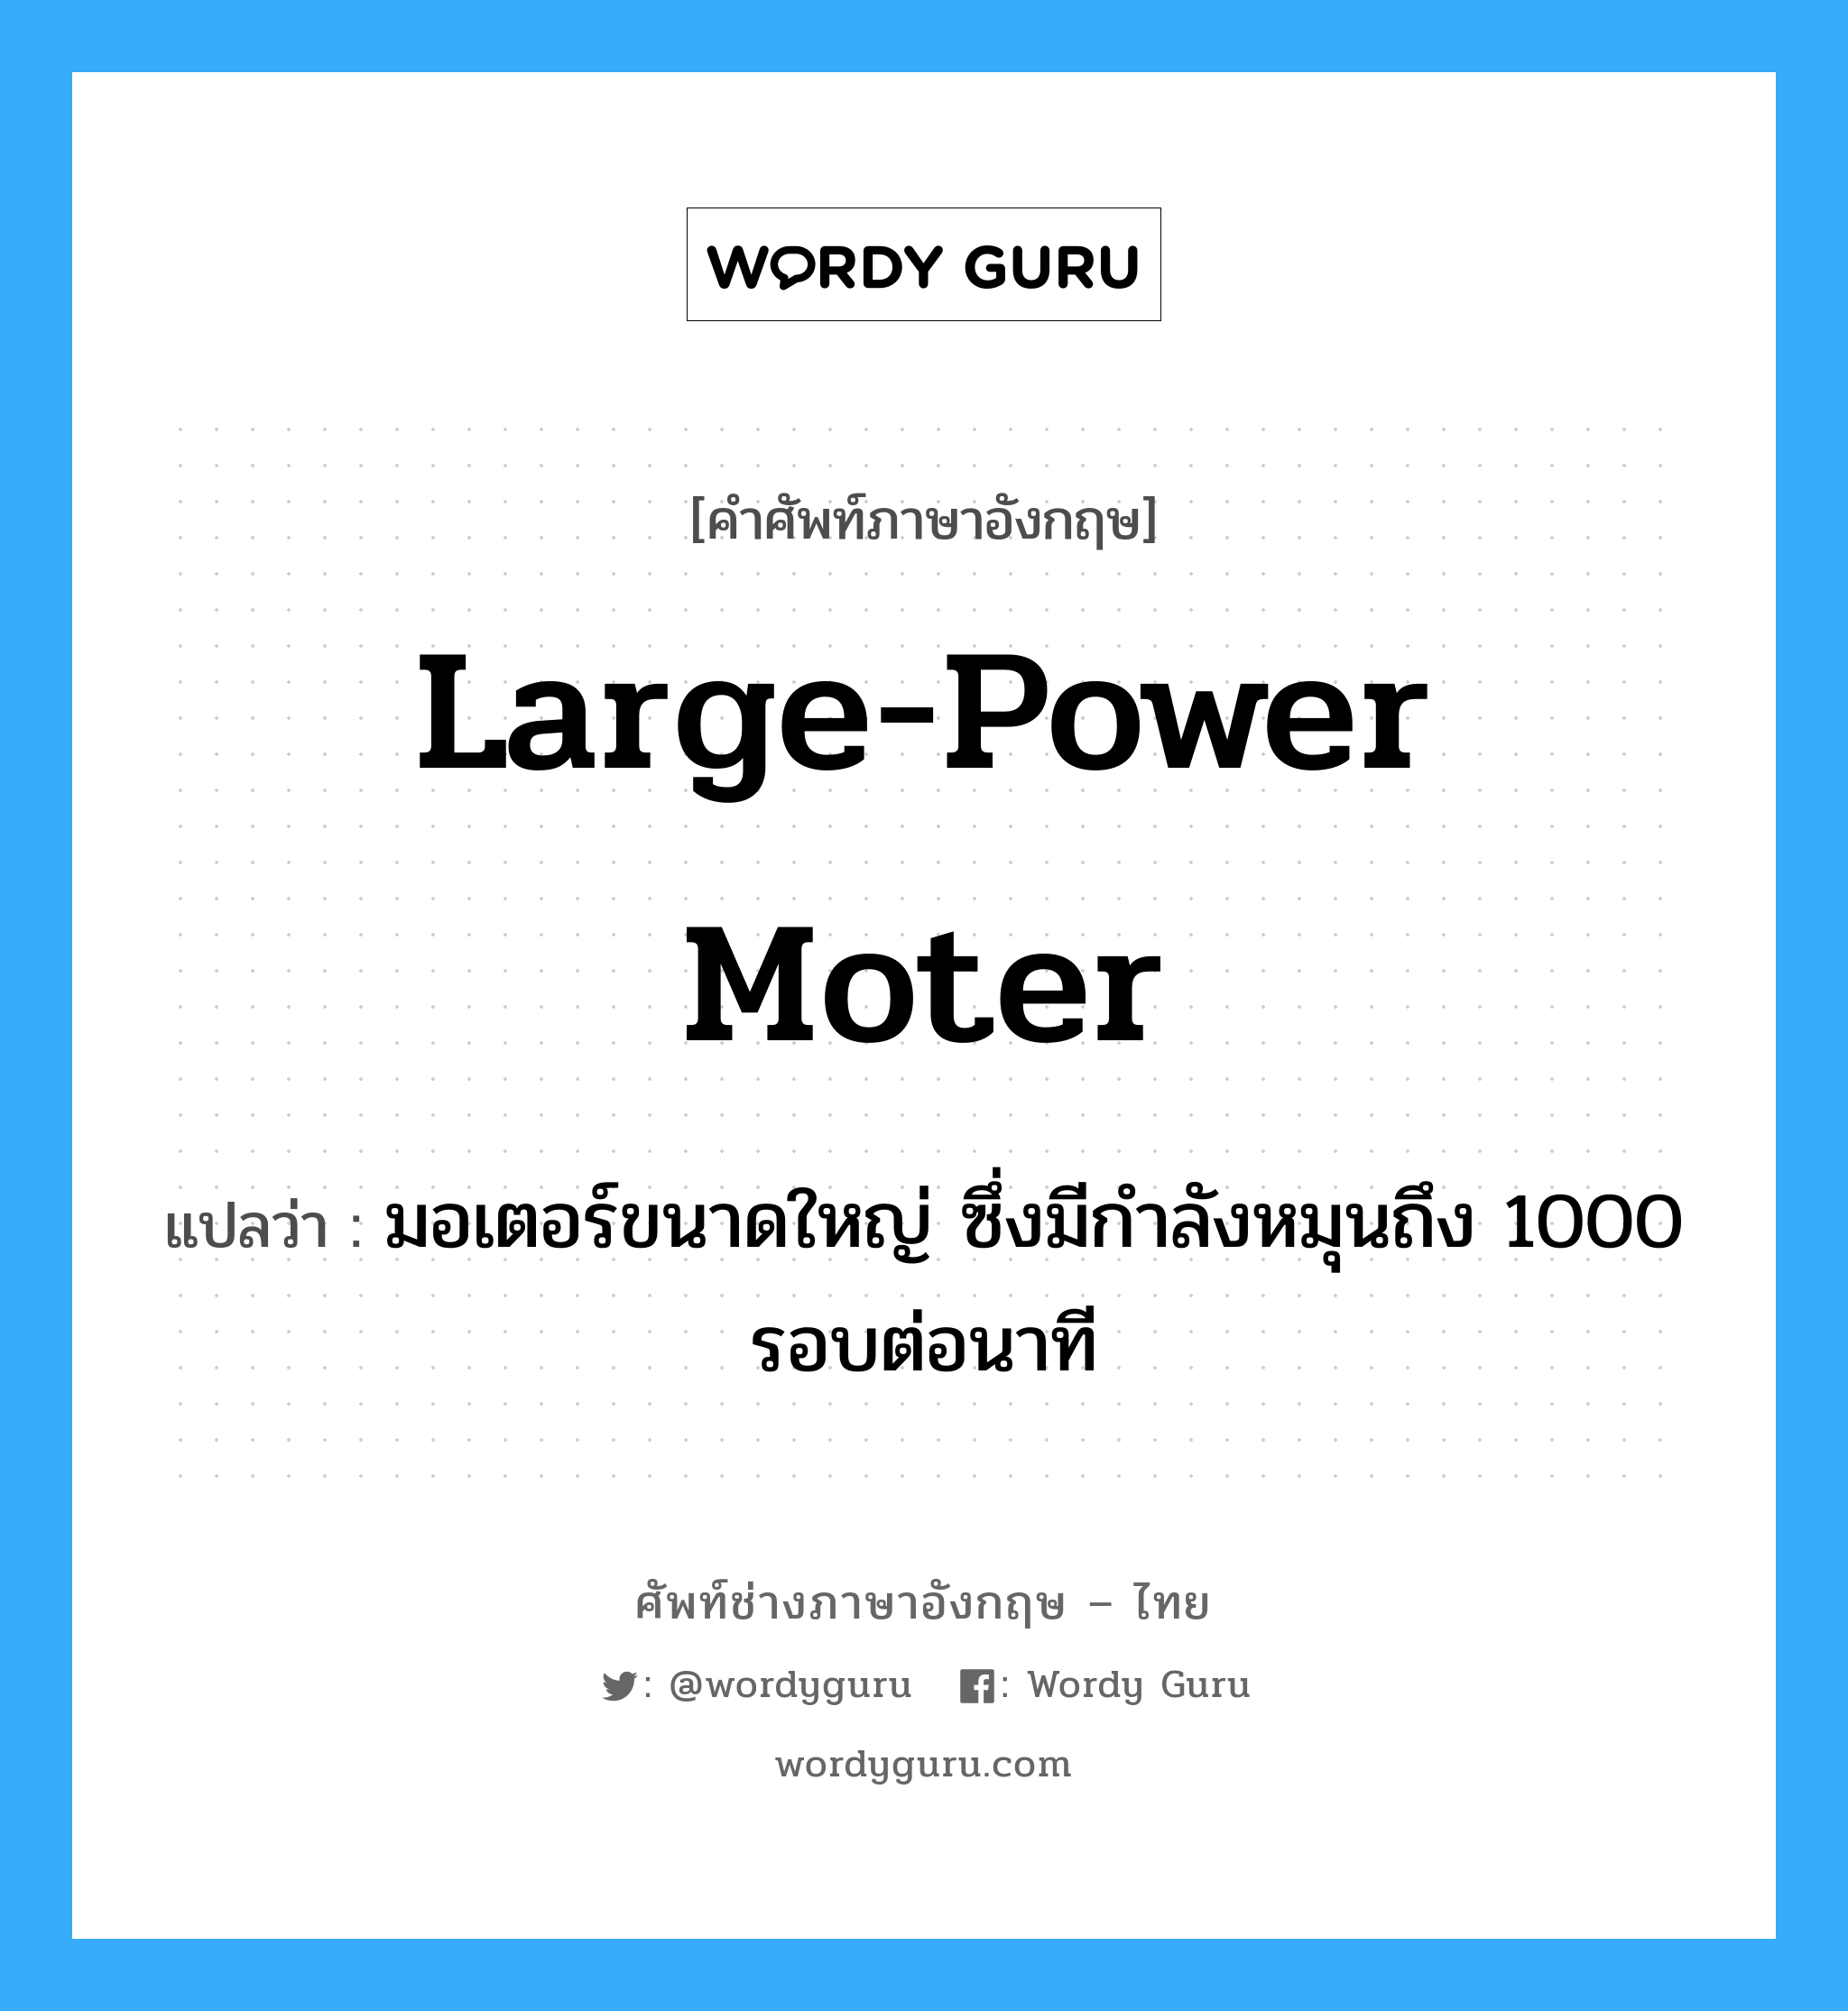 large-power moter แปลว่า?, คำศัพท์ช่างภาษาอังกฤษ - ไทย large-power moter คำศัพท์ภาษาอังกฤษ large-power moter แปลว่า มอเตอร์ขนาดใหญ่ ซึ่งมีกำลังหมุนถึง 1000 รอบต่อนาที